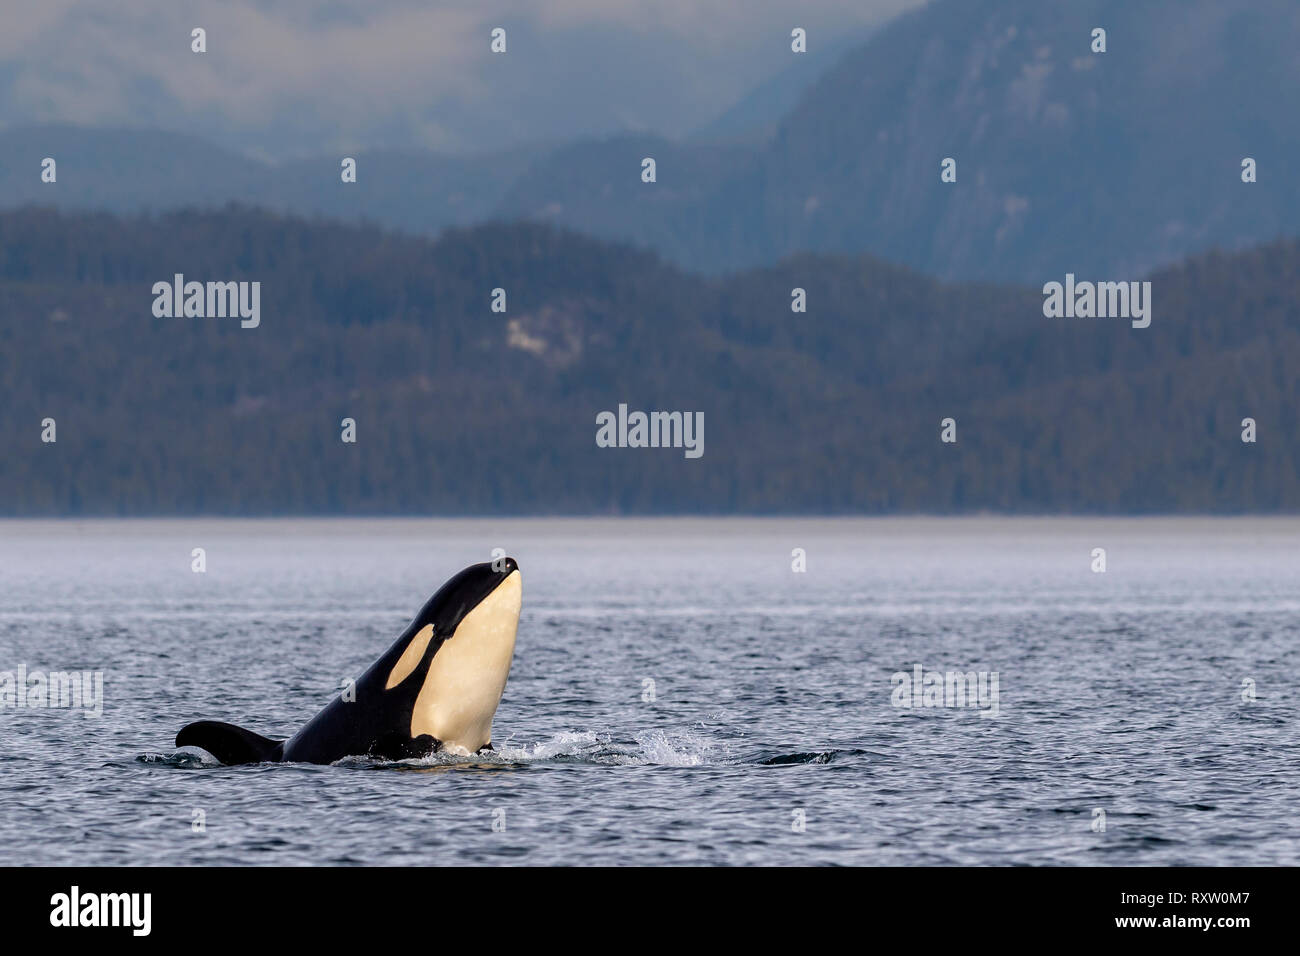 Orcas residentes en el norte (orcas, Orcinus orca) espian en el estrecho de Queen Charlotte cerca del bosque tropical Great Bear, las montañas costeras de British Columbia, el Territorio de las primeras Naciones, la isla de Vancouver, British Columbia, Canadá. Foto de stock